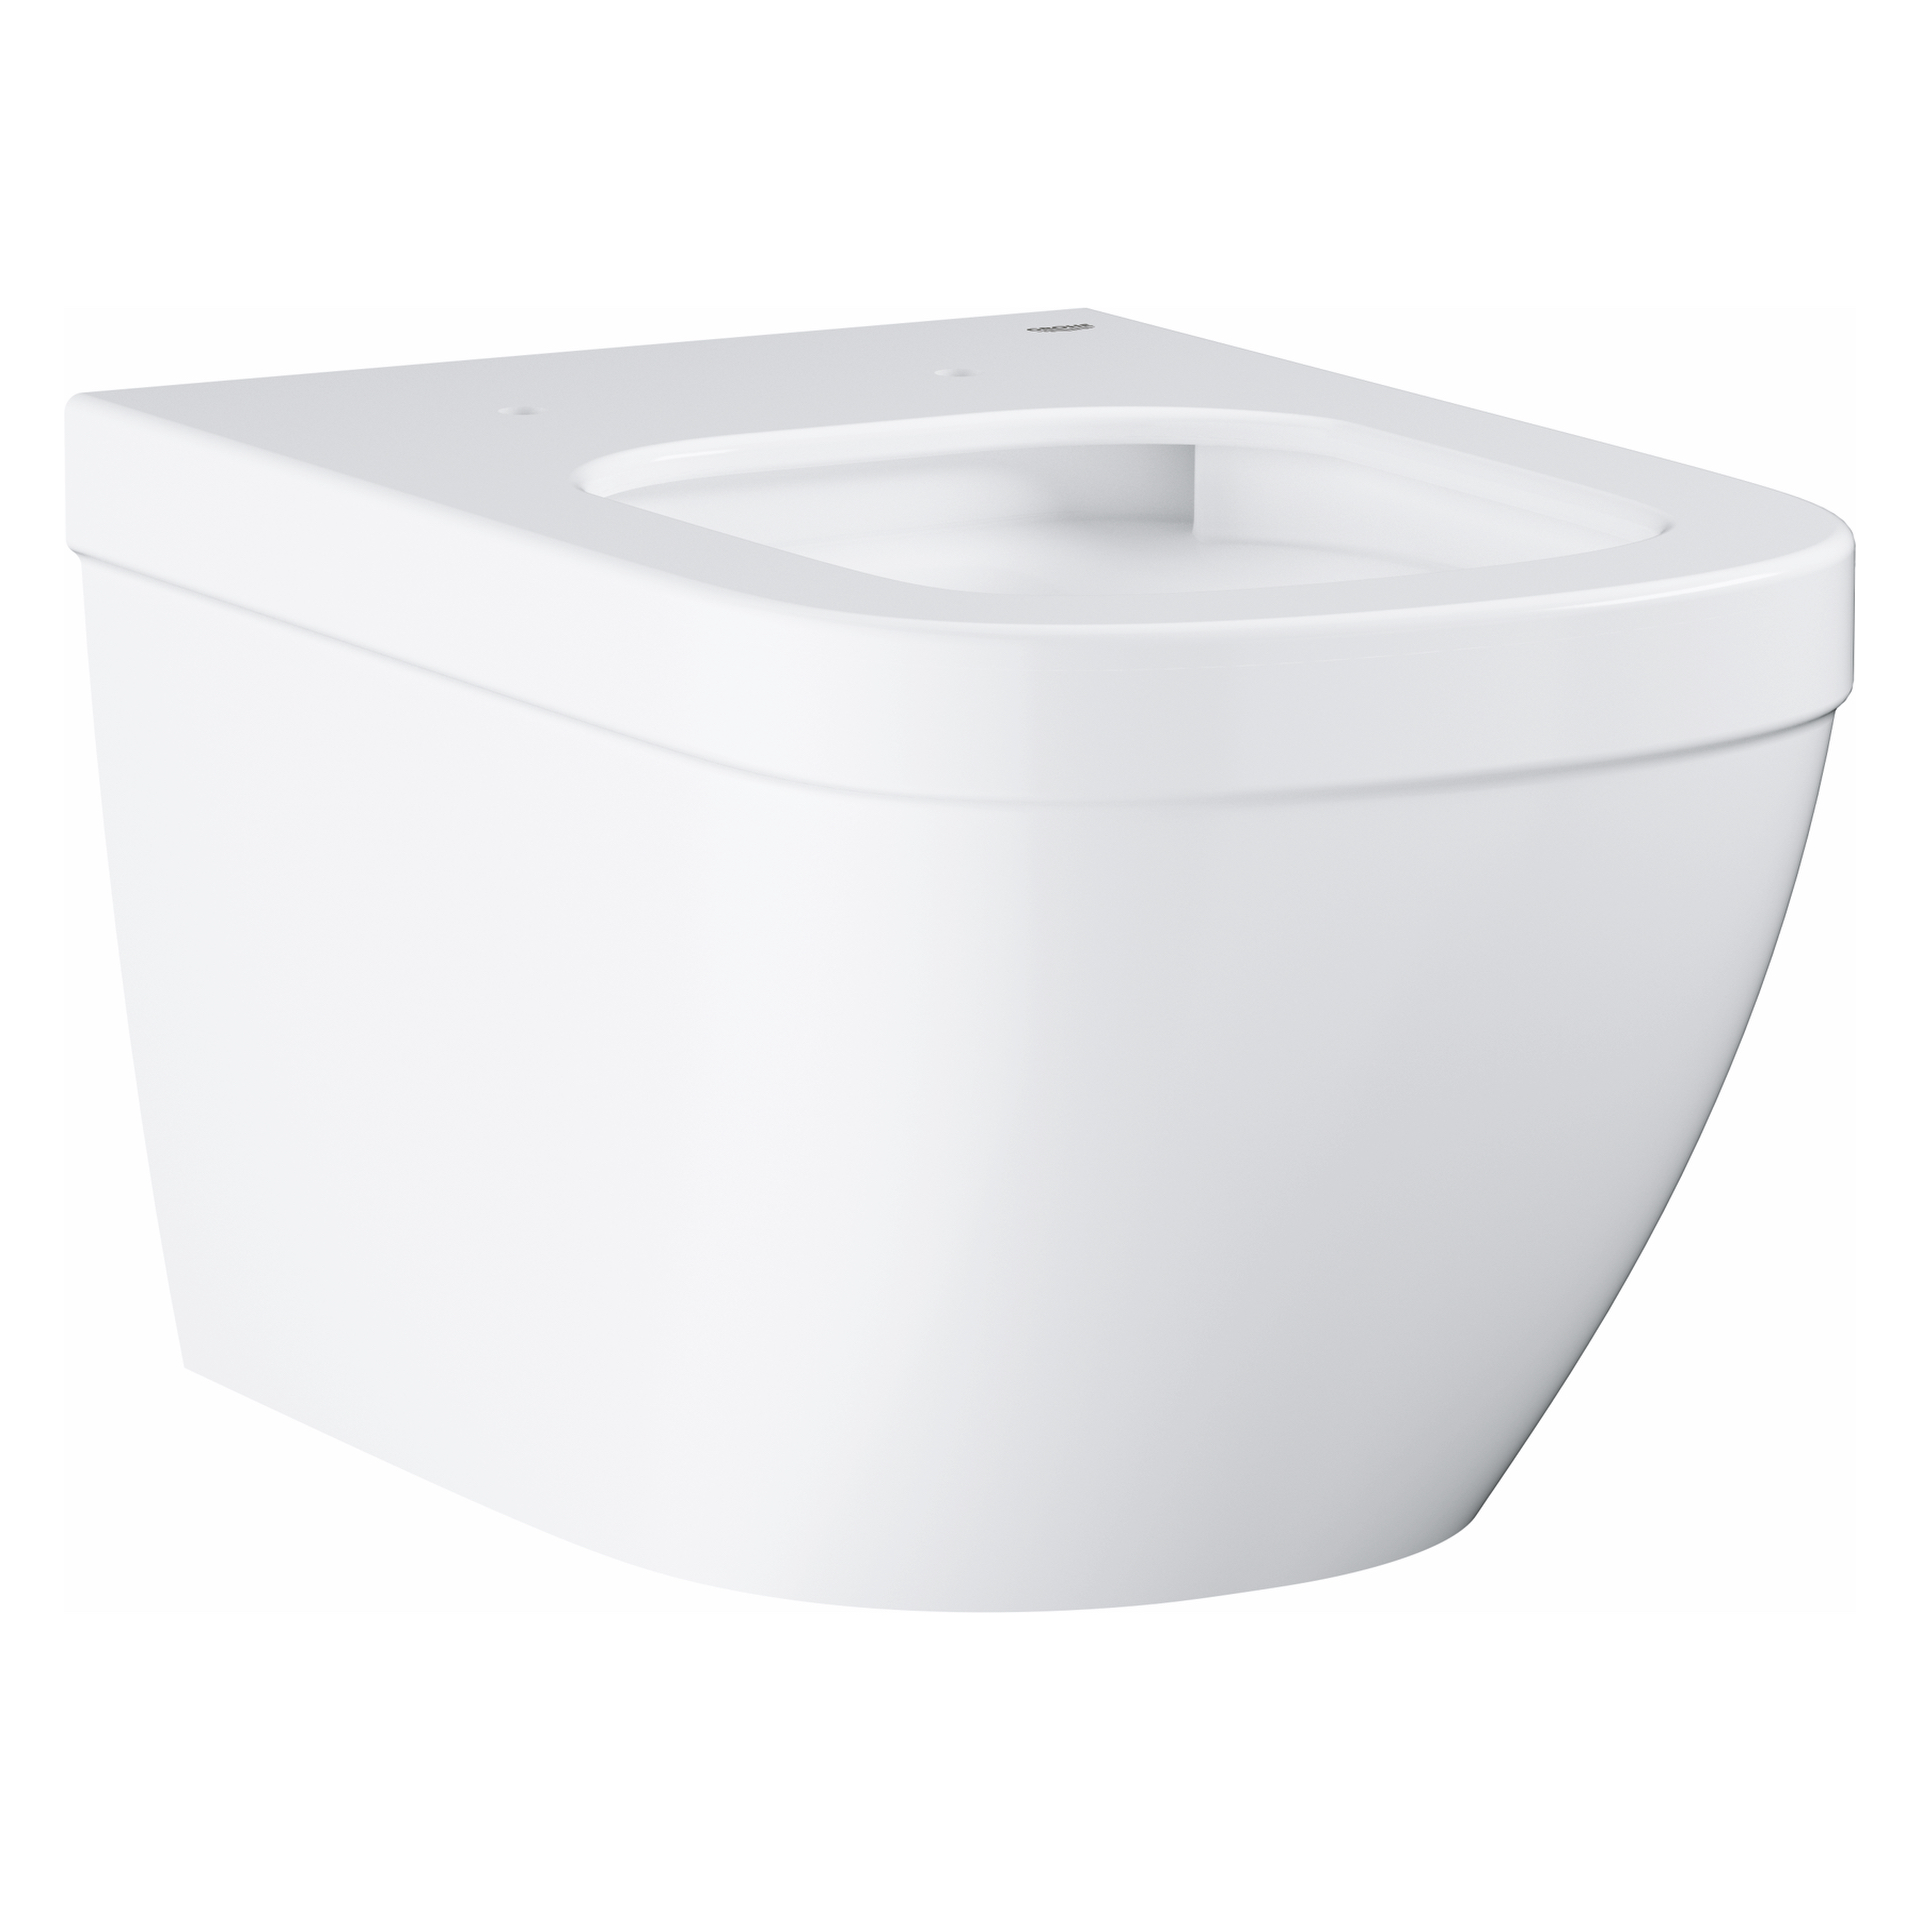 Wand-Tiefspül-WC Euro Keramik 39328, Abgang waagerecht, spülrandlos, für Unterputz-Spülkasten, aus Sanitärkeramik, alpinweiß